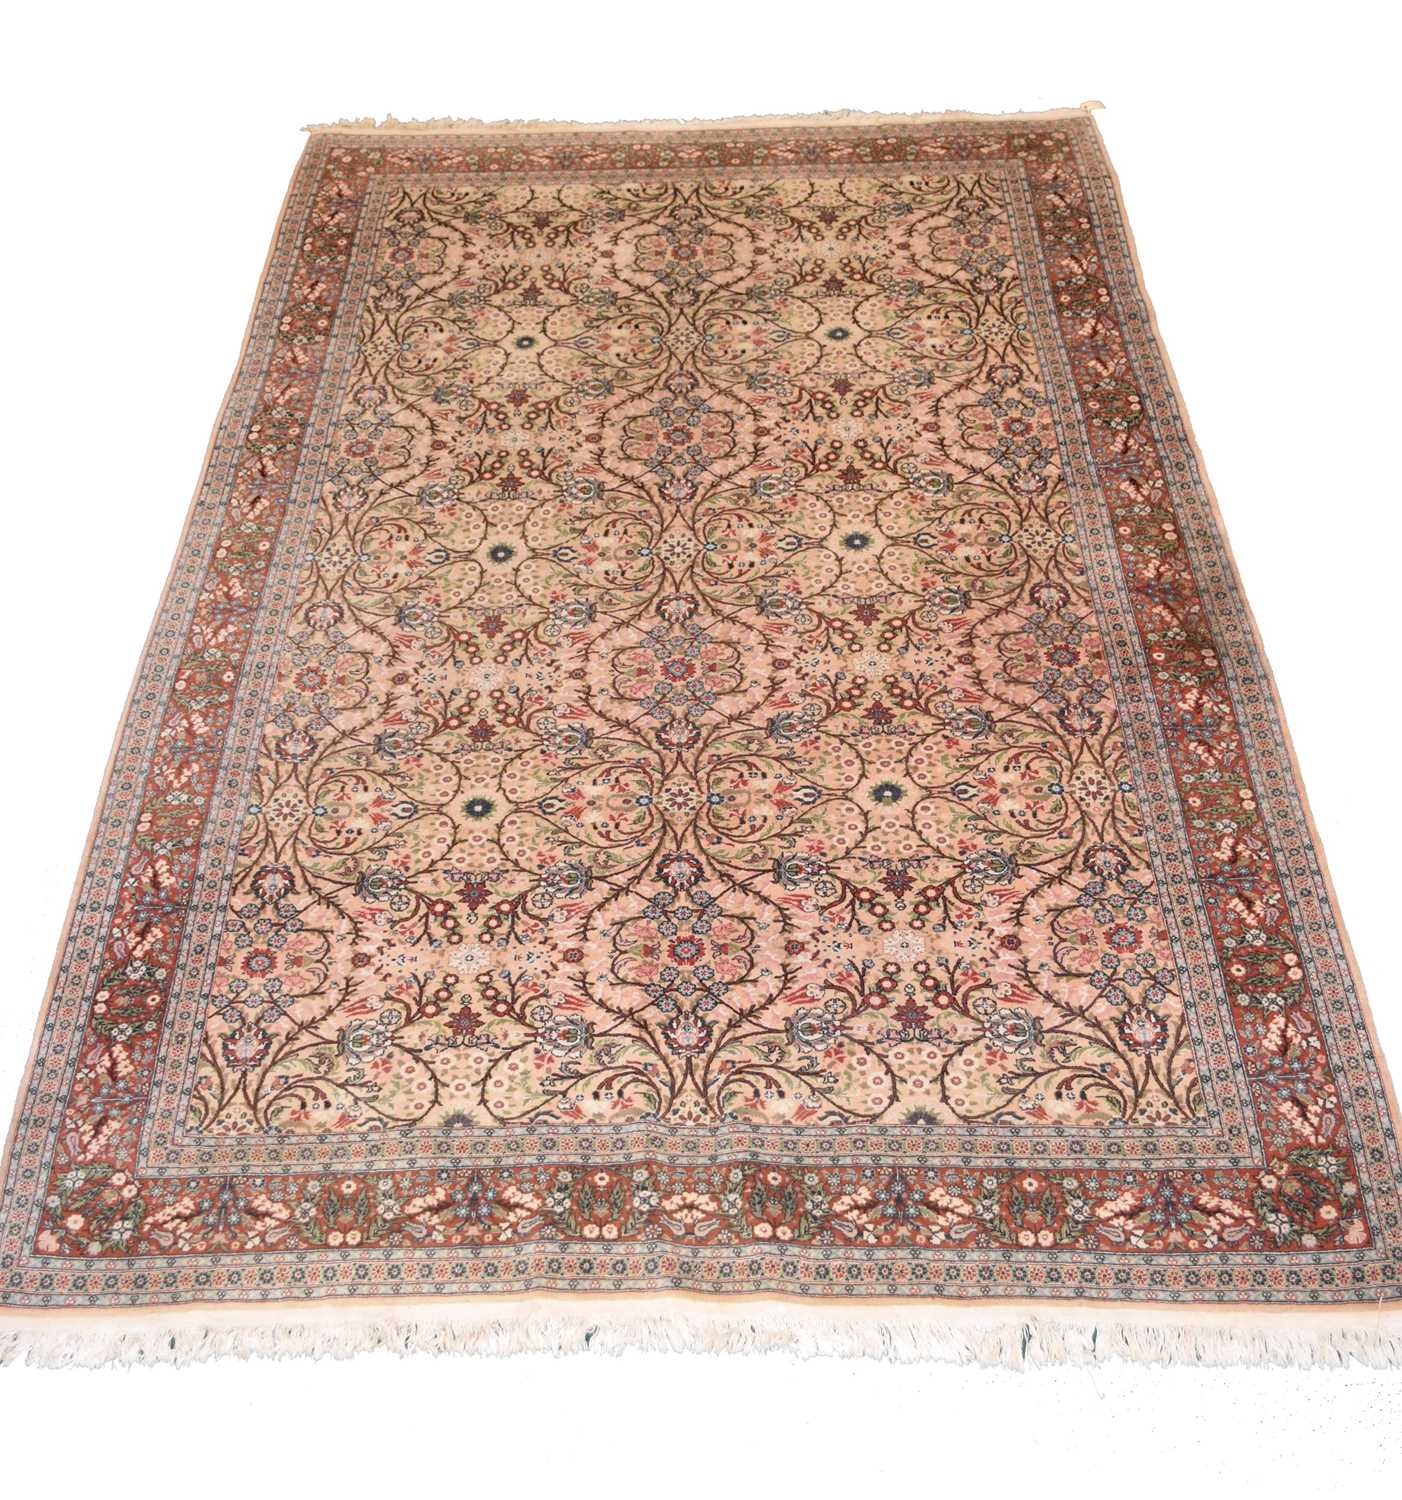 A Turkish Keyseri Bunyan carpet, 20th century